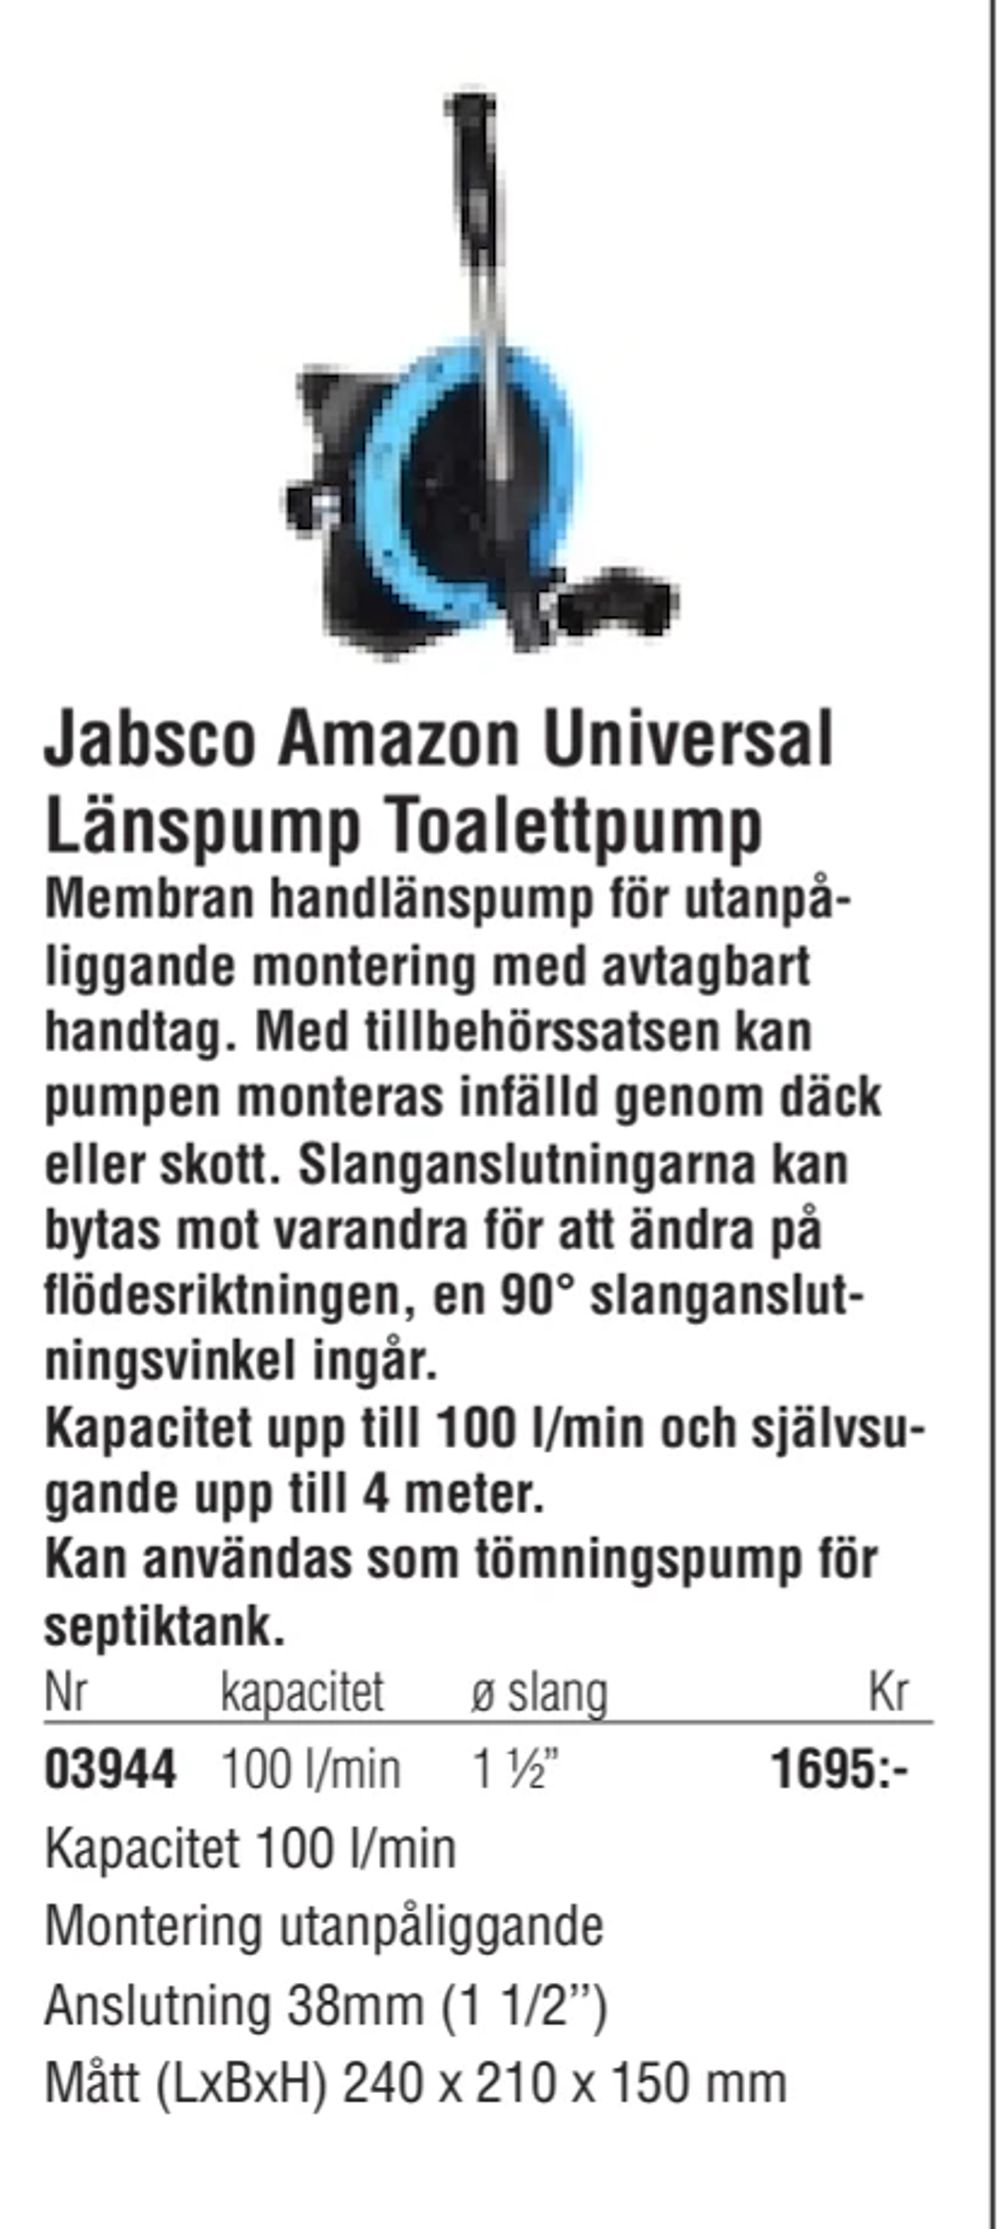 Erbjudanden på Jabsco Amazon Universal Länspump Toalettpump från Erlandsons Brygga för 1 695 kr